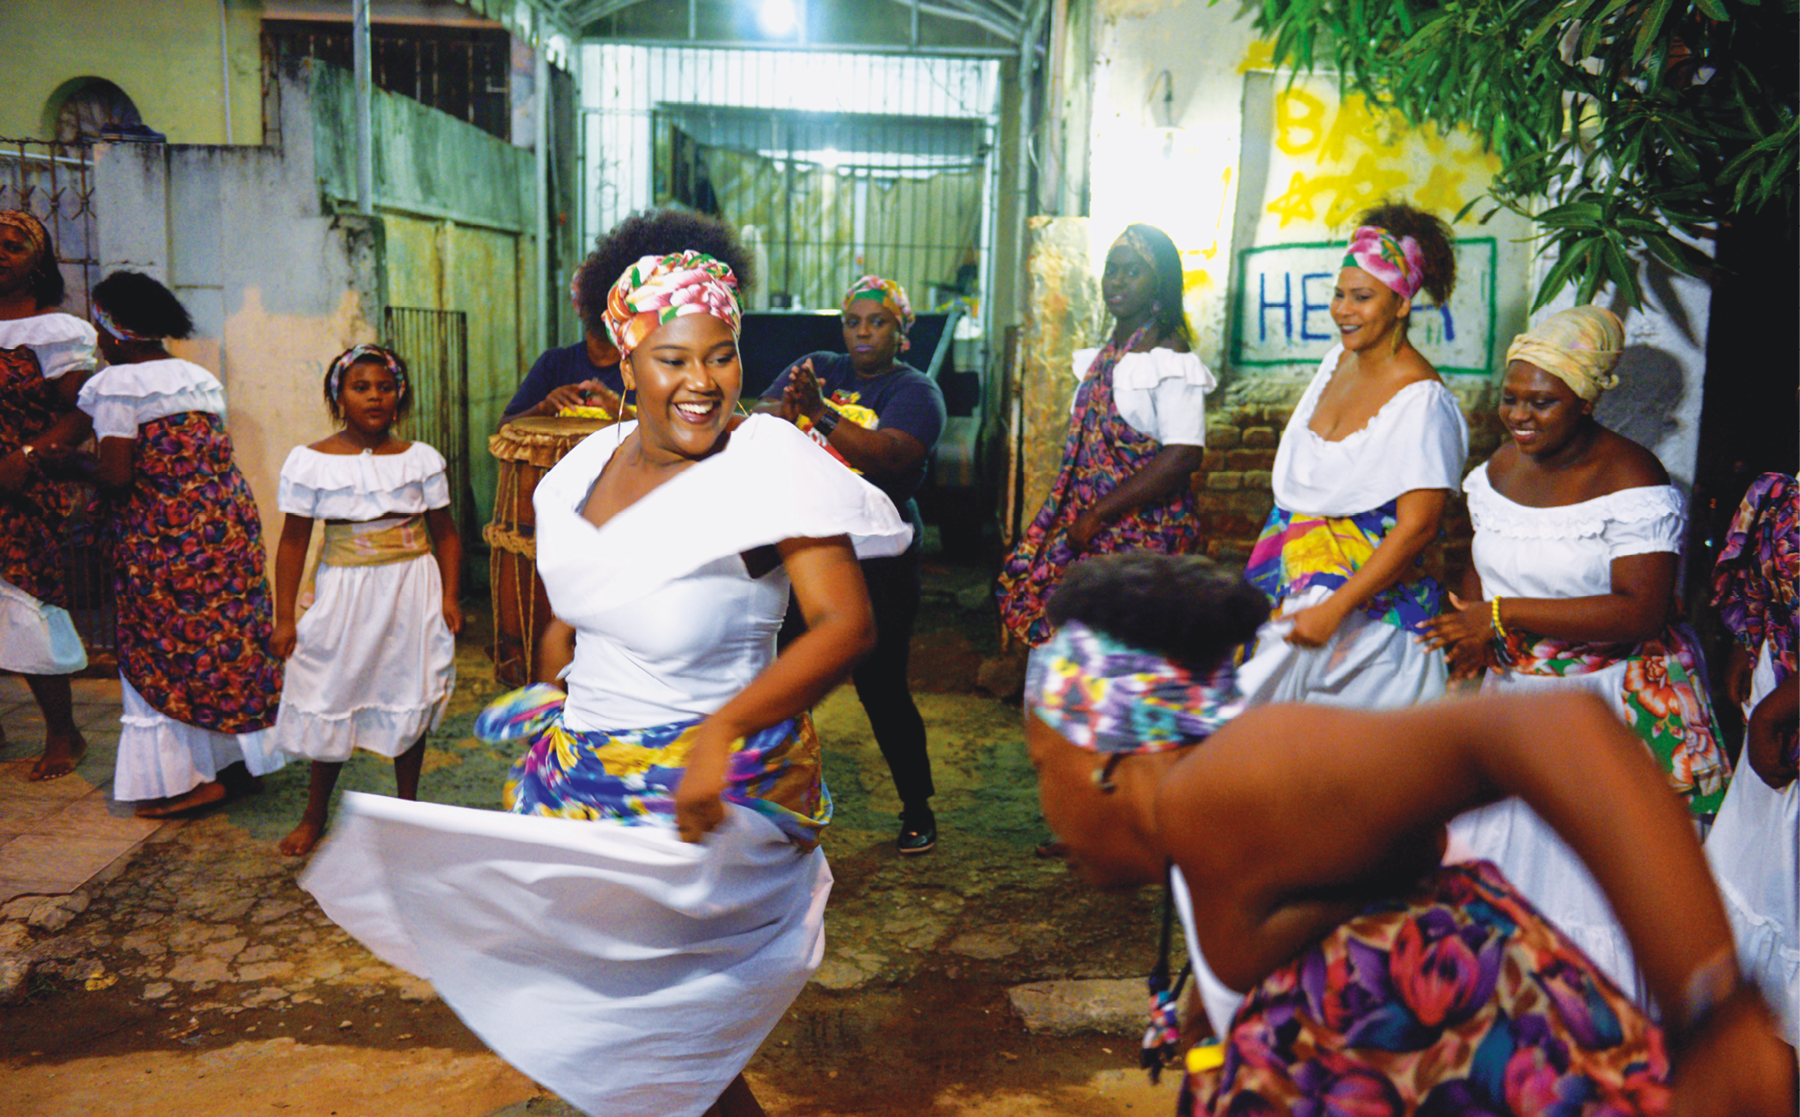 Fotografia. Vista para a calçada de uma rua em frente a uma casa com portão gradeado. Uma dezena de mulheres negras sorridentes dançam em roda. Elas vestem roupas brancas com lenços coloridos na cabeça e na cintura.